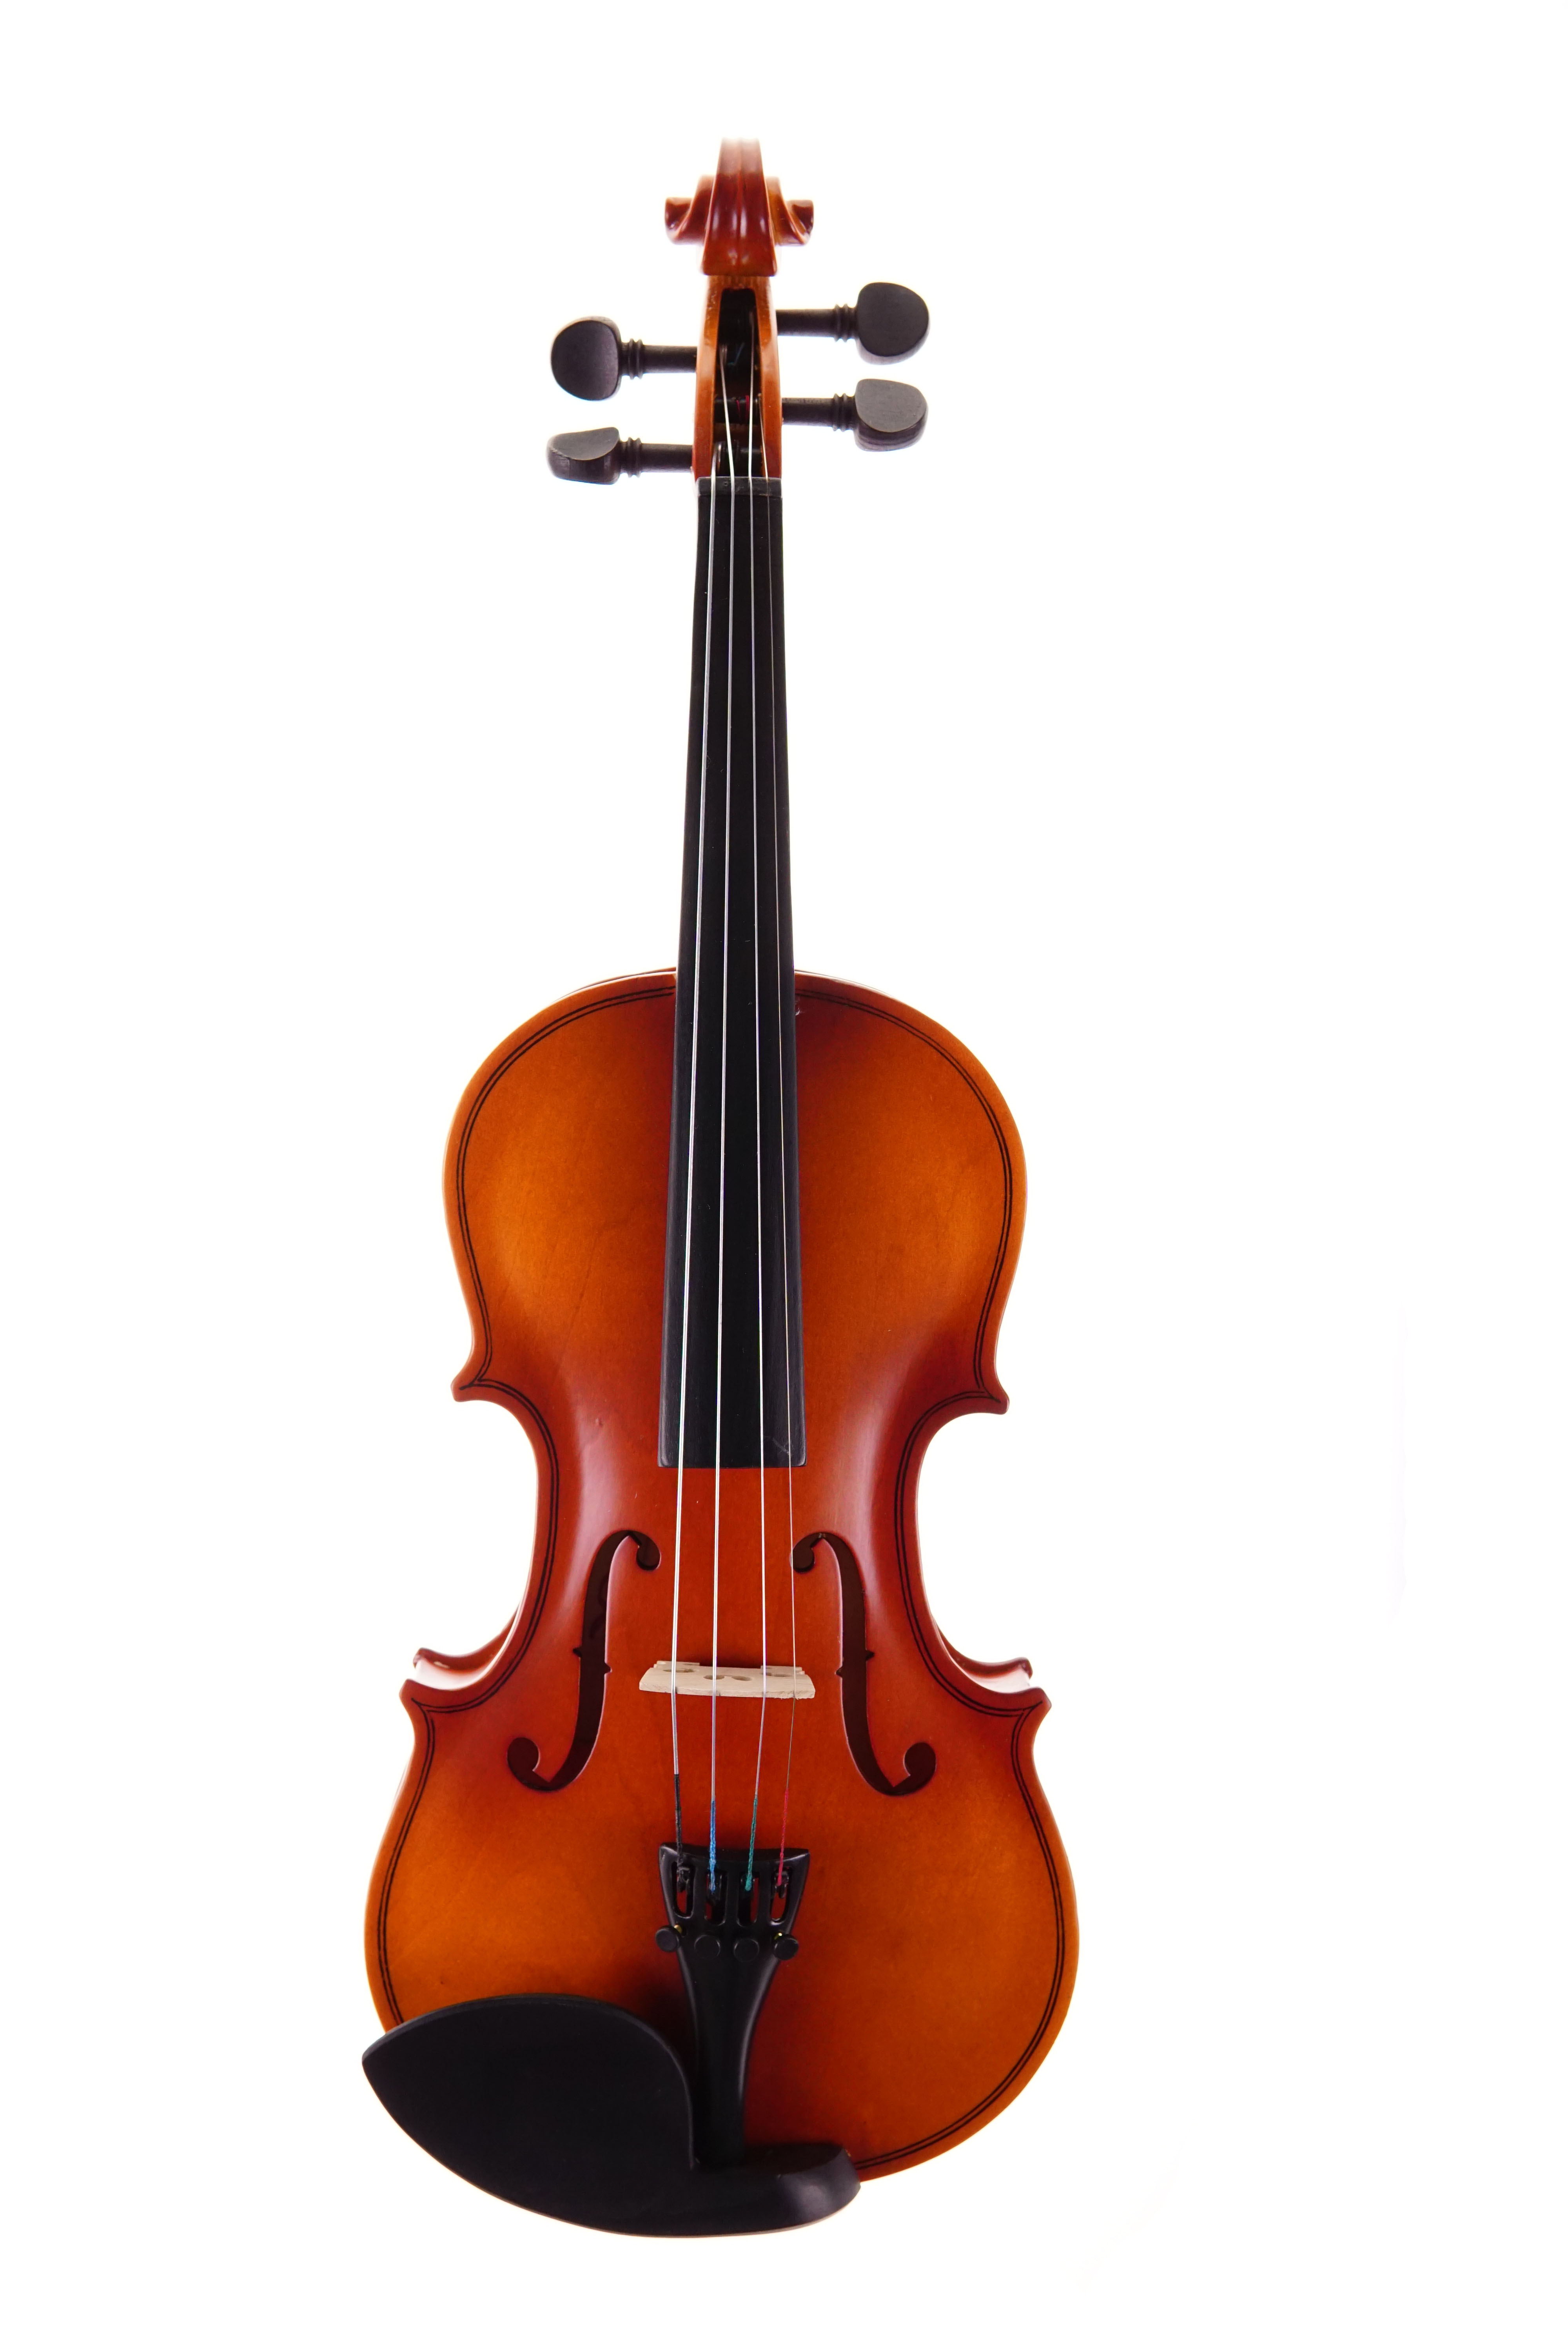 共294 件小提琴音准相关商品